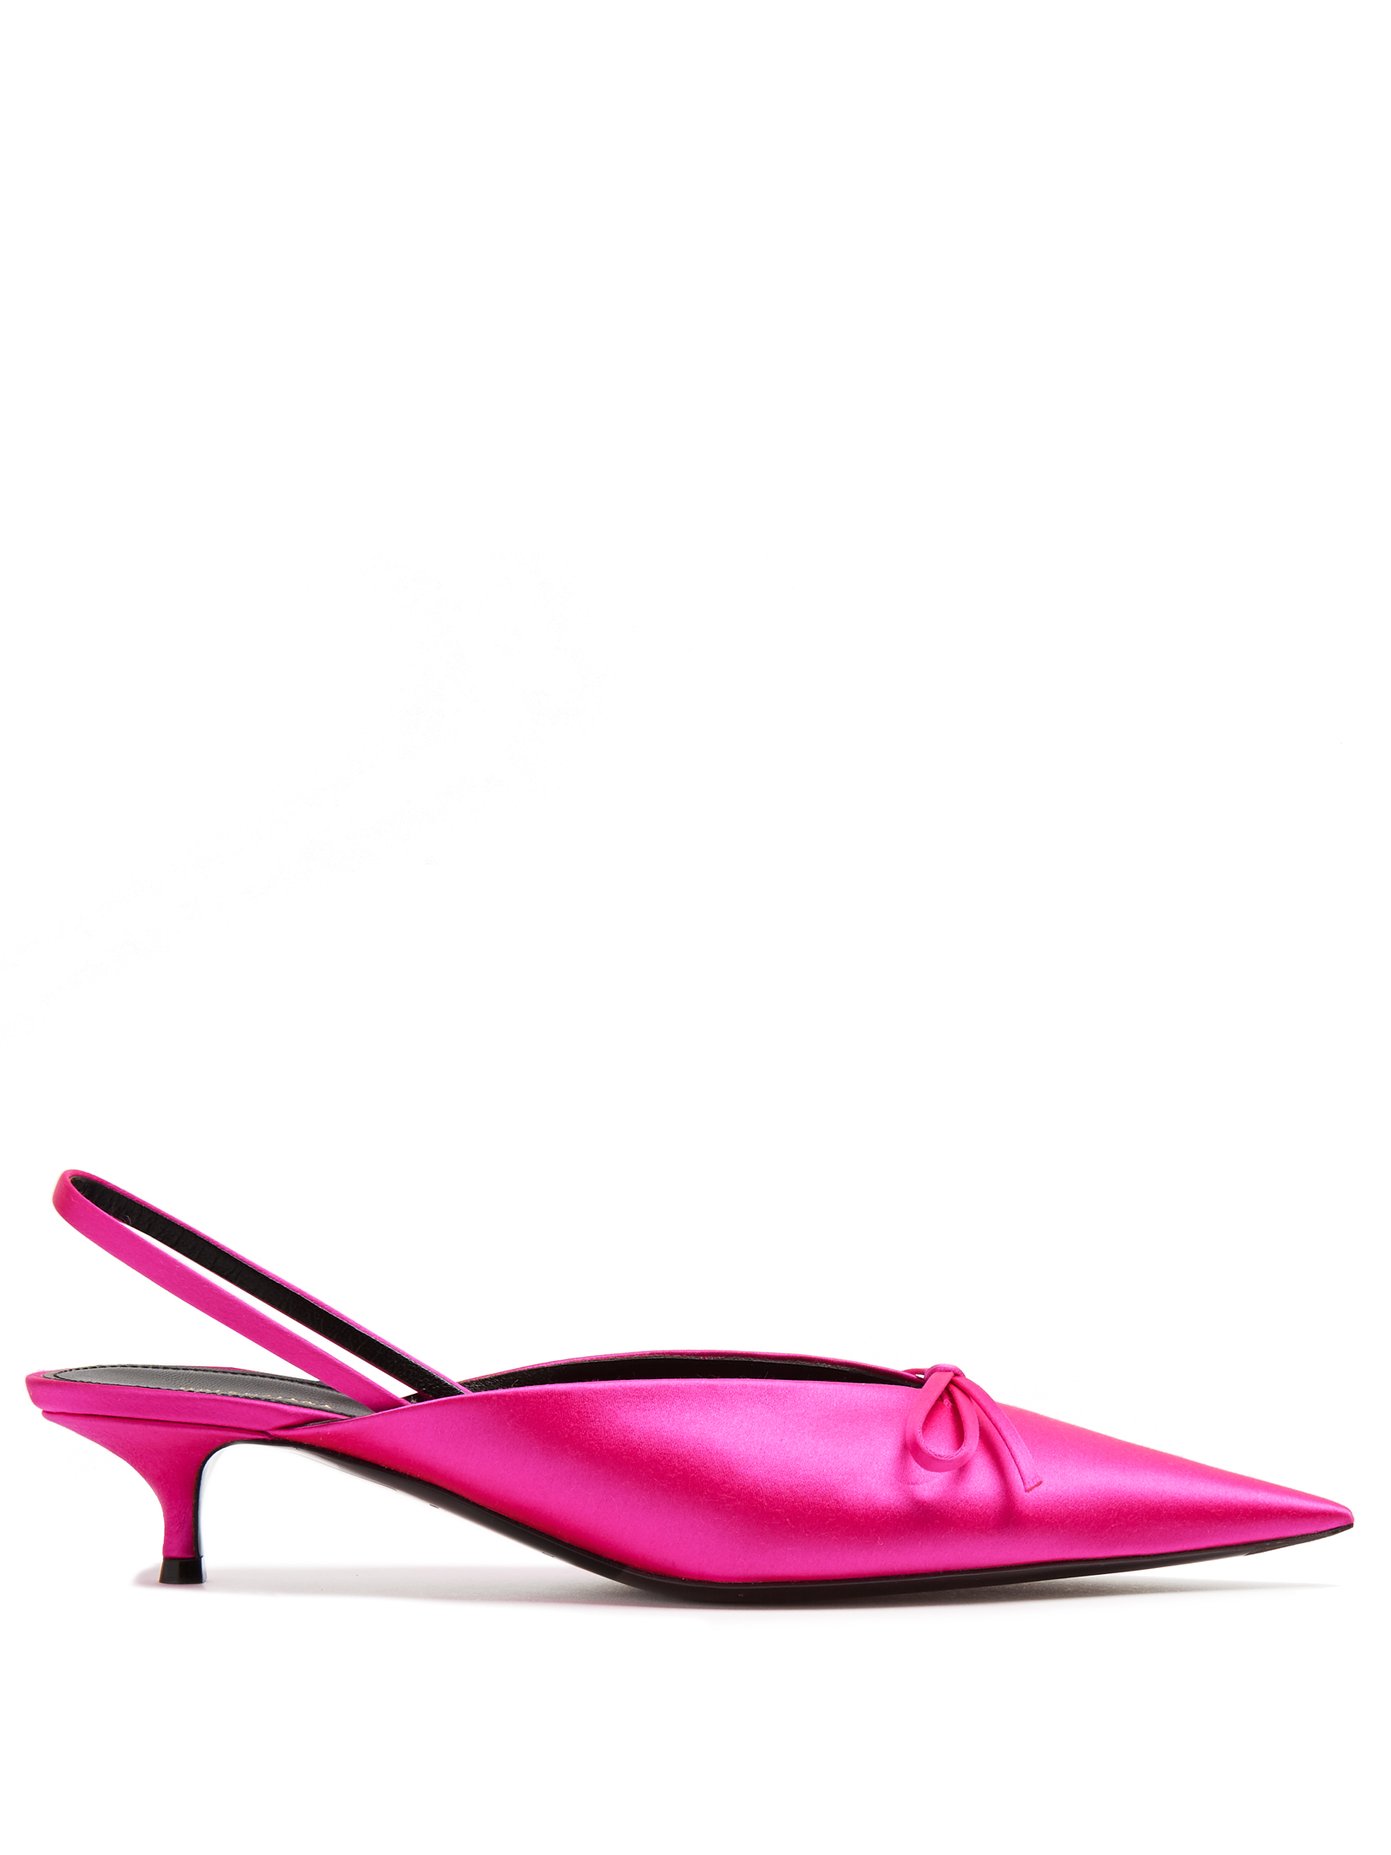 pink sling back shoes uk